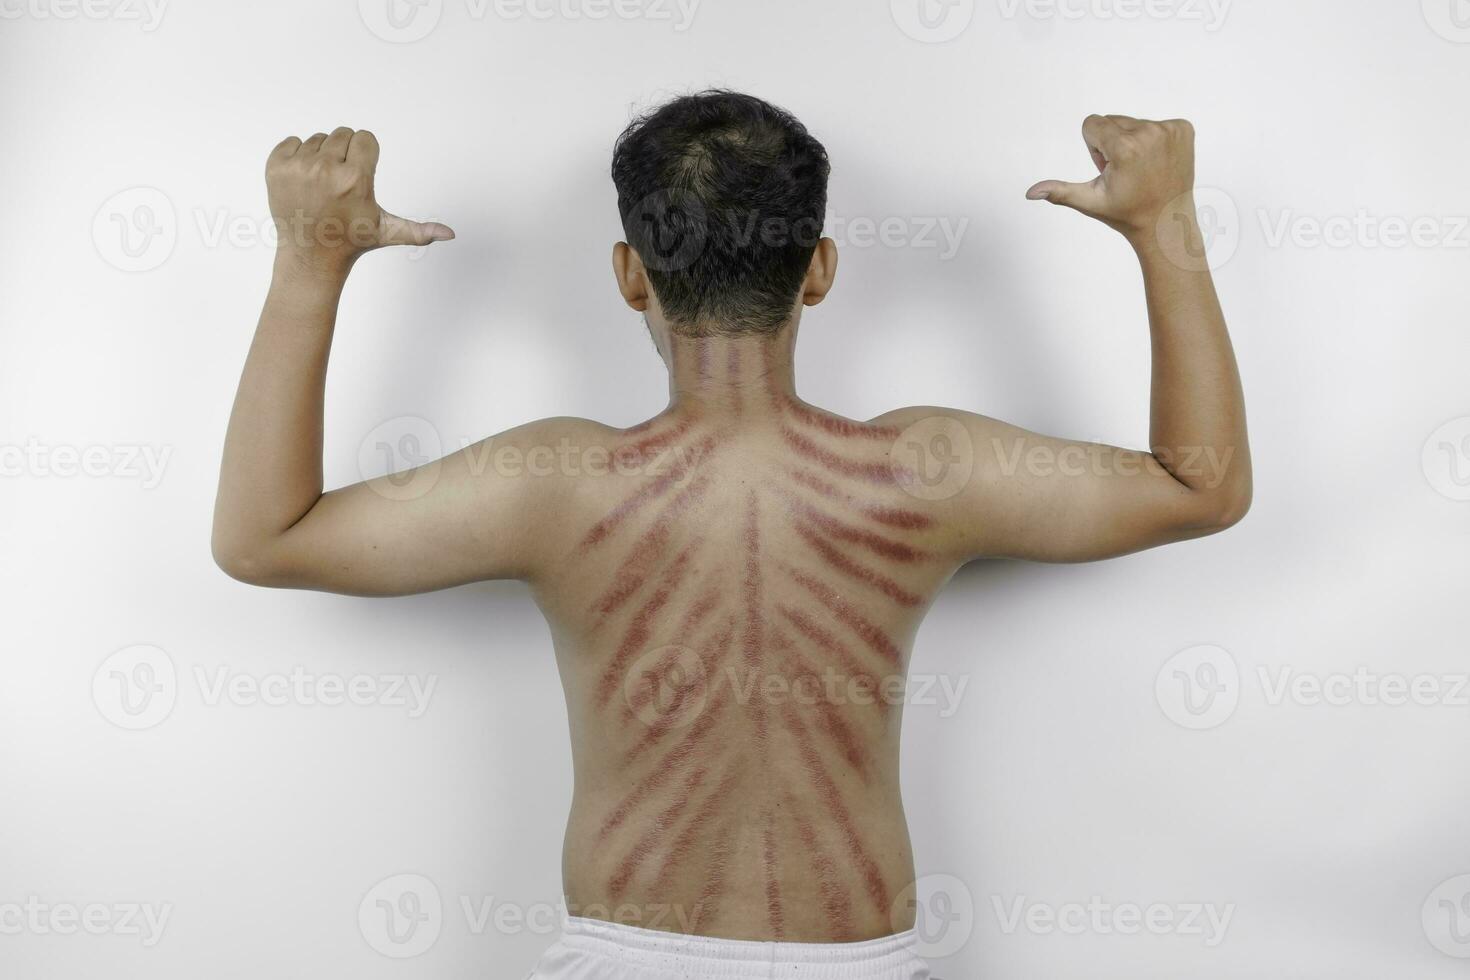 rot Markierungen von Kratzer Münze auf ein des Mannes zurück. Kerokan ist ein Weg von traditionell javanisch Kultur medizinisch Behandlung zu behandeln Symptome von Erkältungen im Indonesien foto